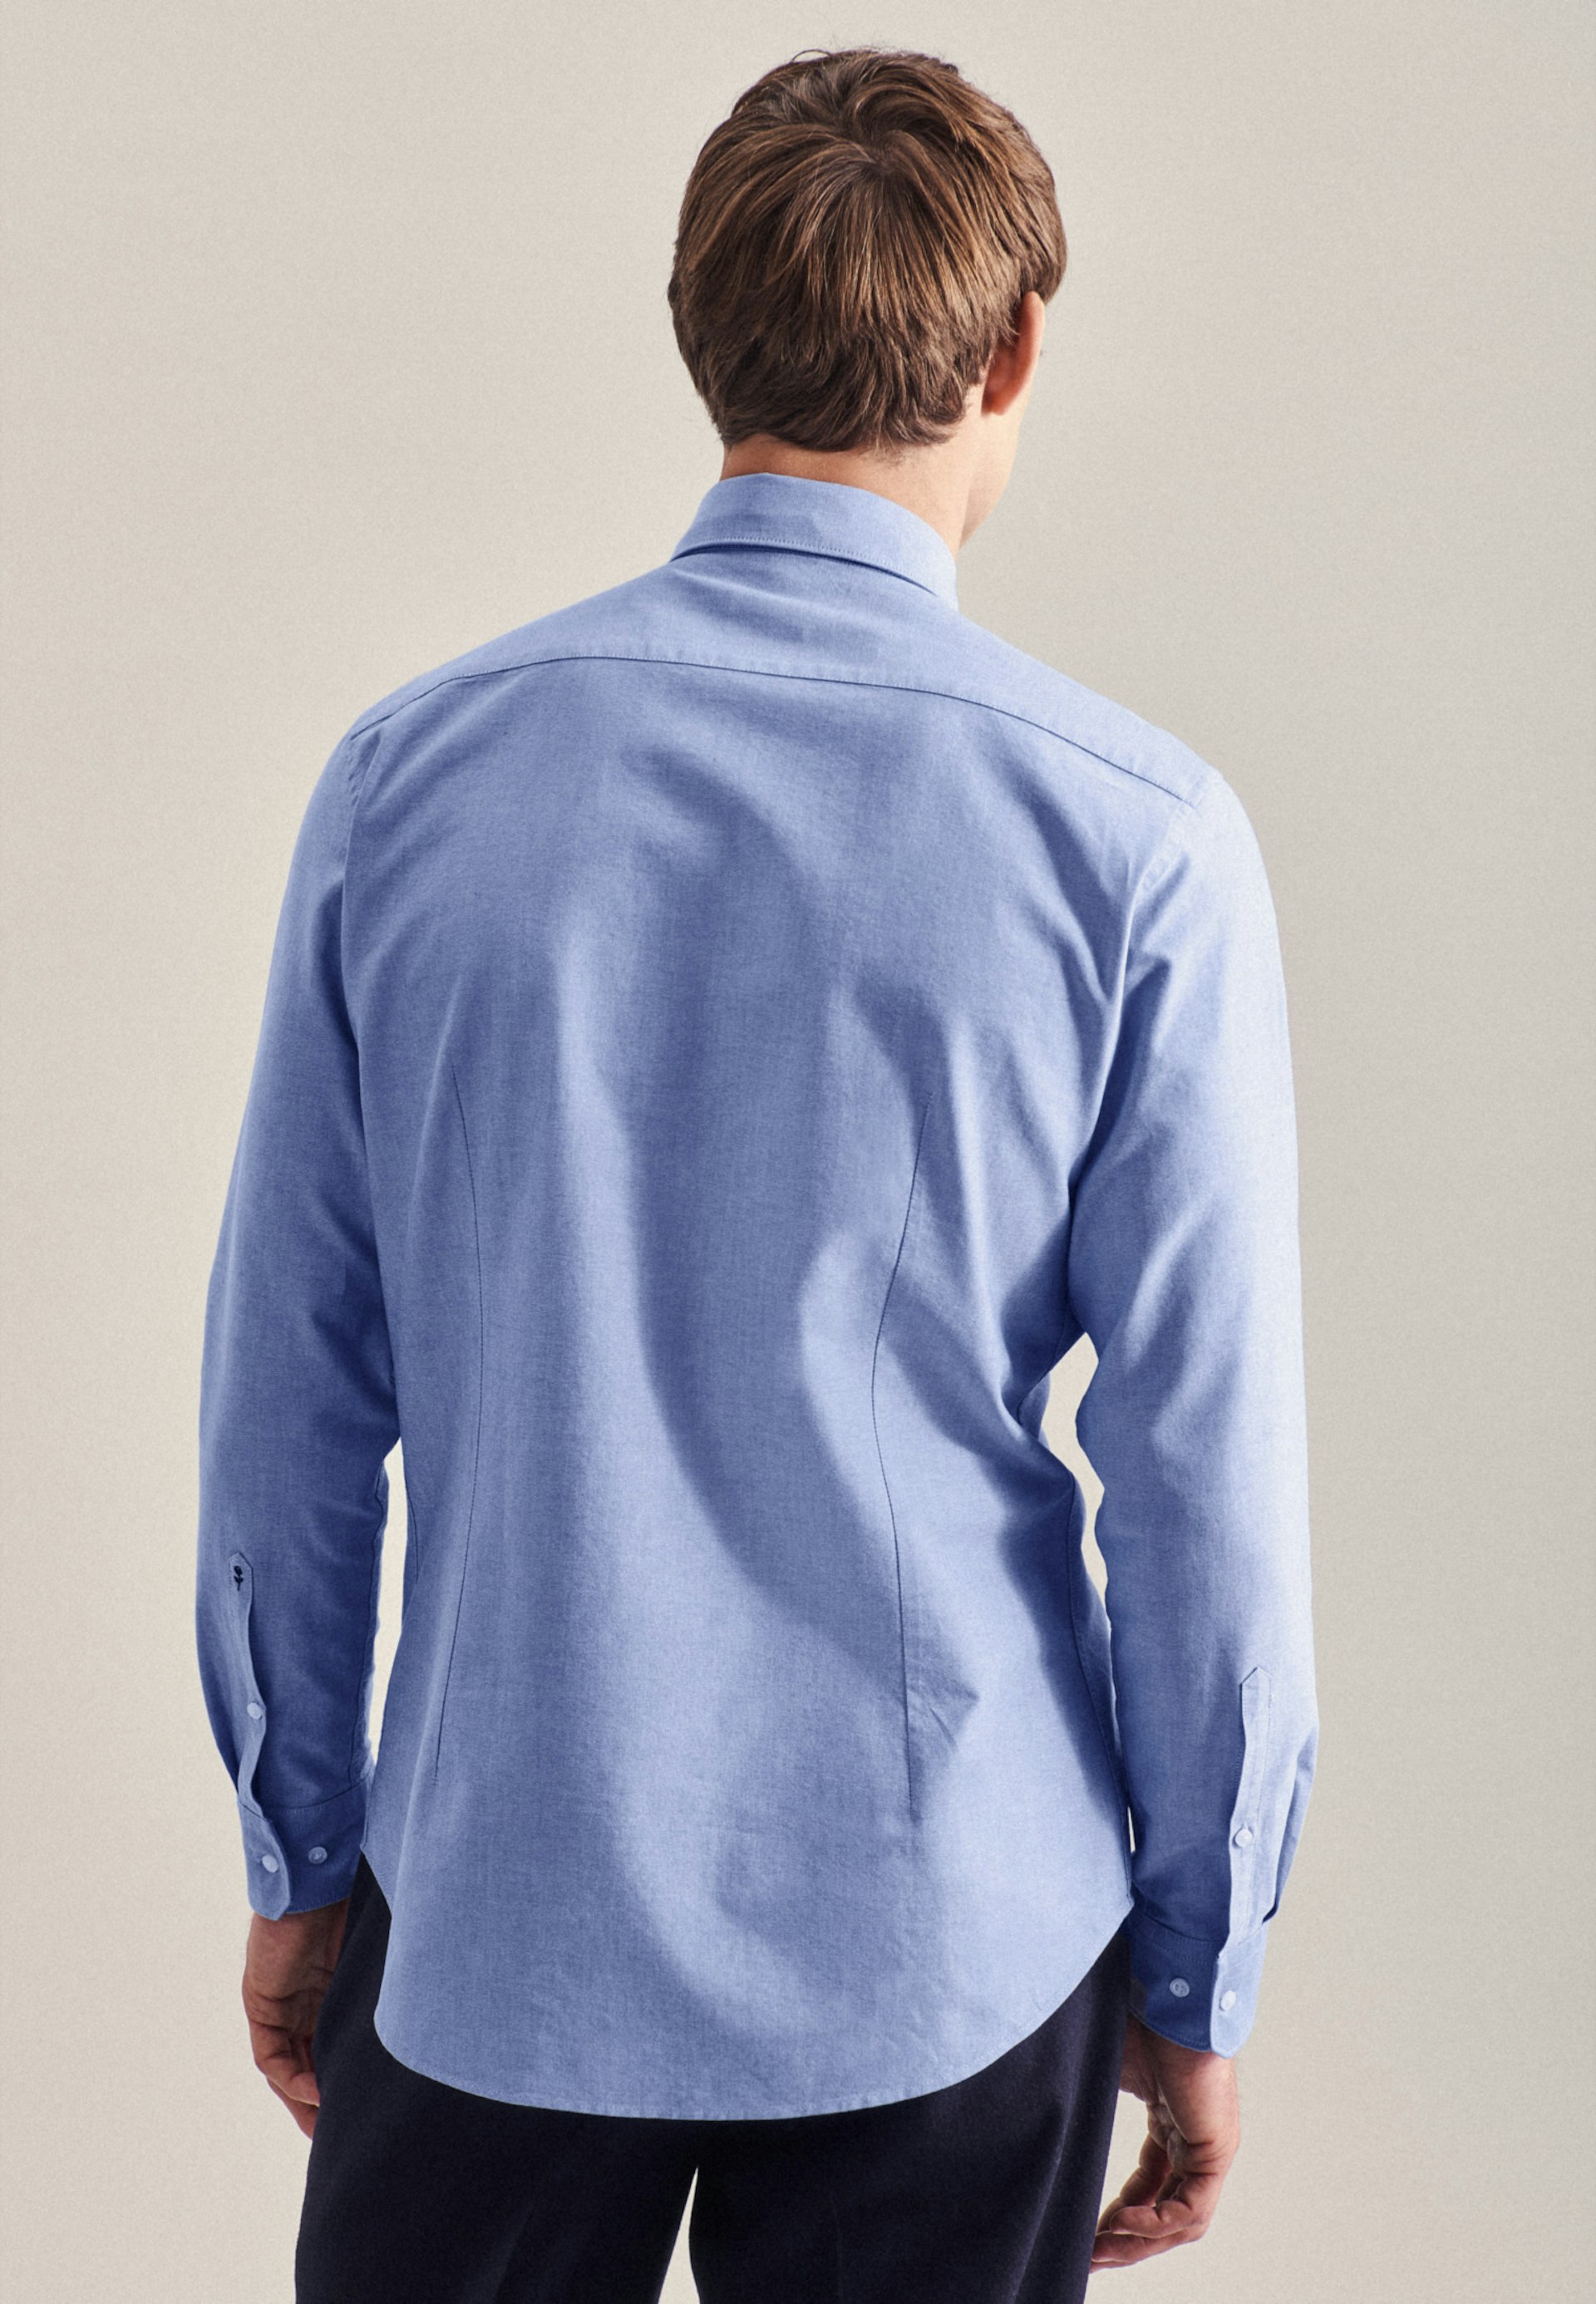 Herren Oxford Business Hemd in mit Seidensticker hellblau | Button-Down-Kragen Shaped